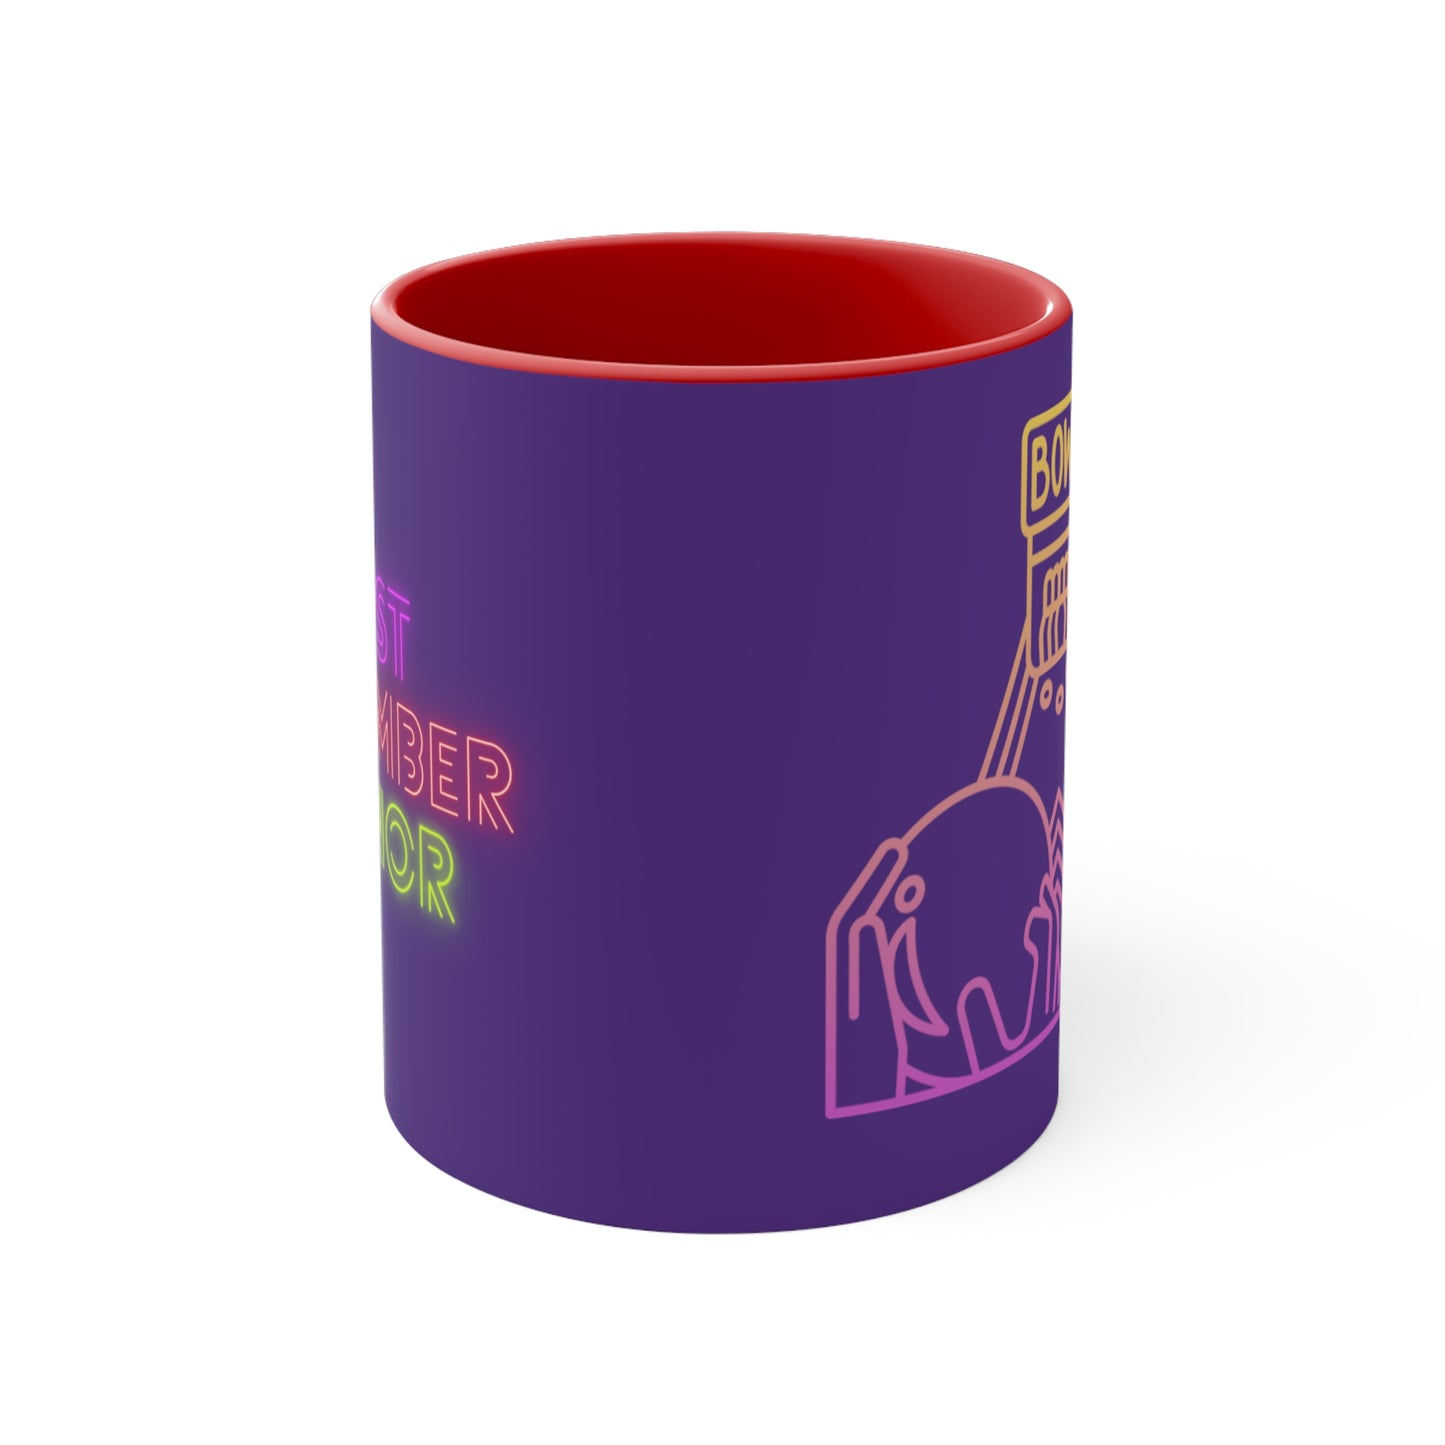 Accent Coffee Mug, 11oz: Bowling Purple